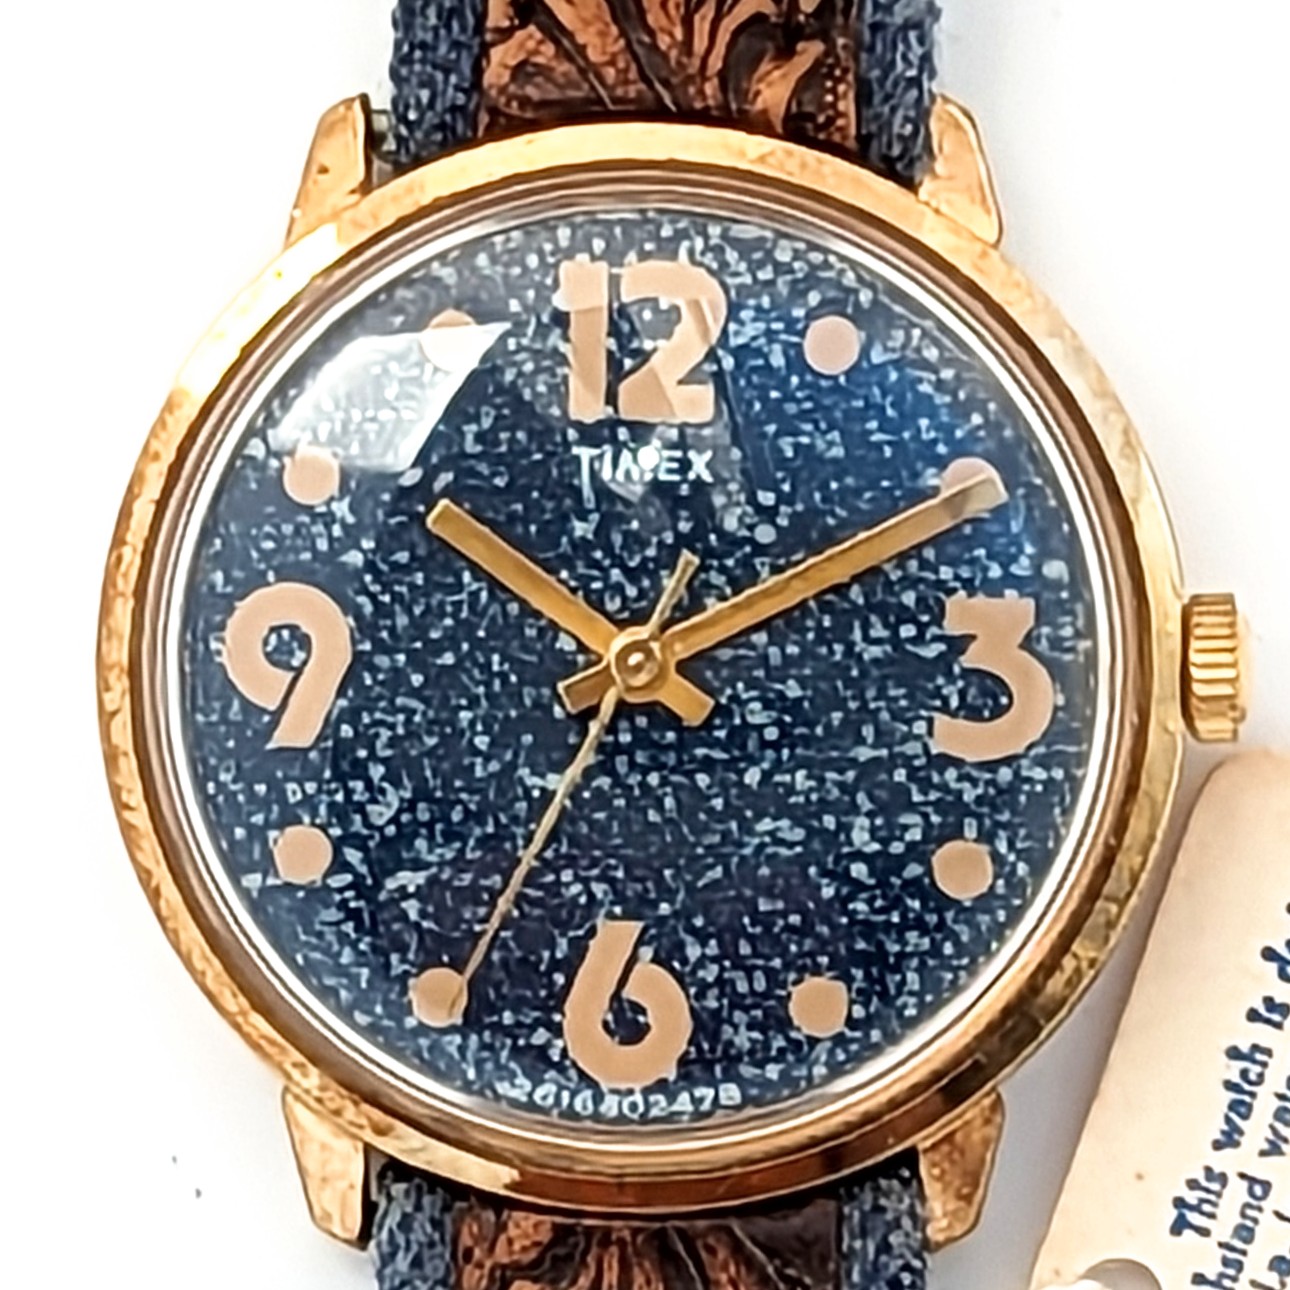 Timex Marlin 26164 02478 [1978] Wrist Jeans